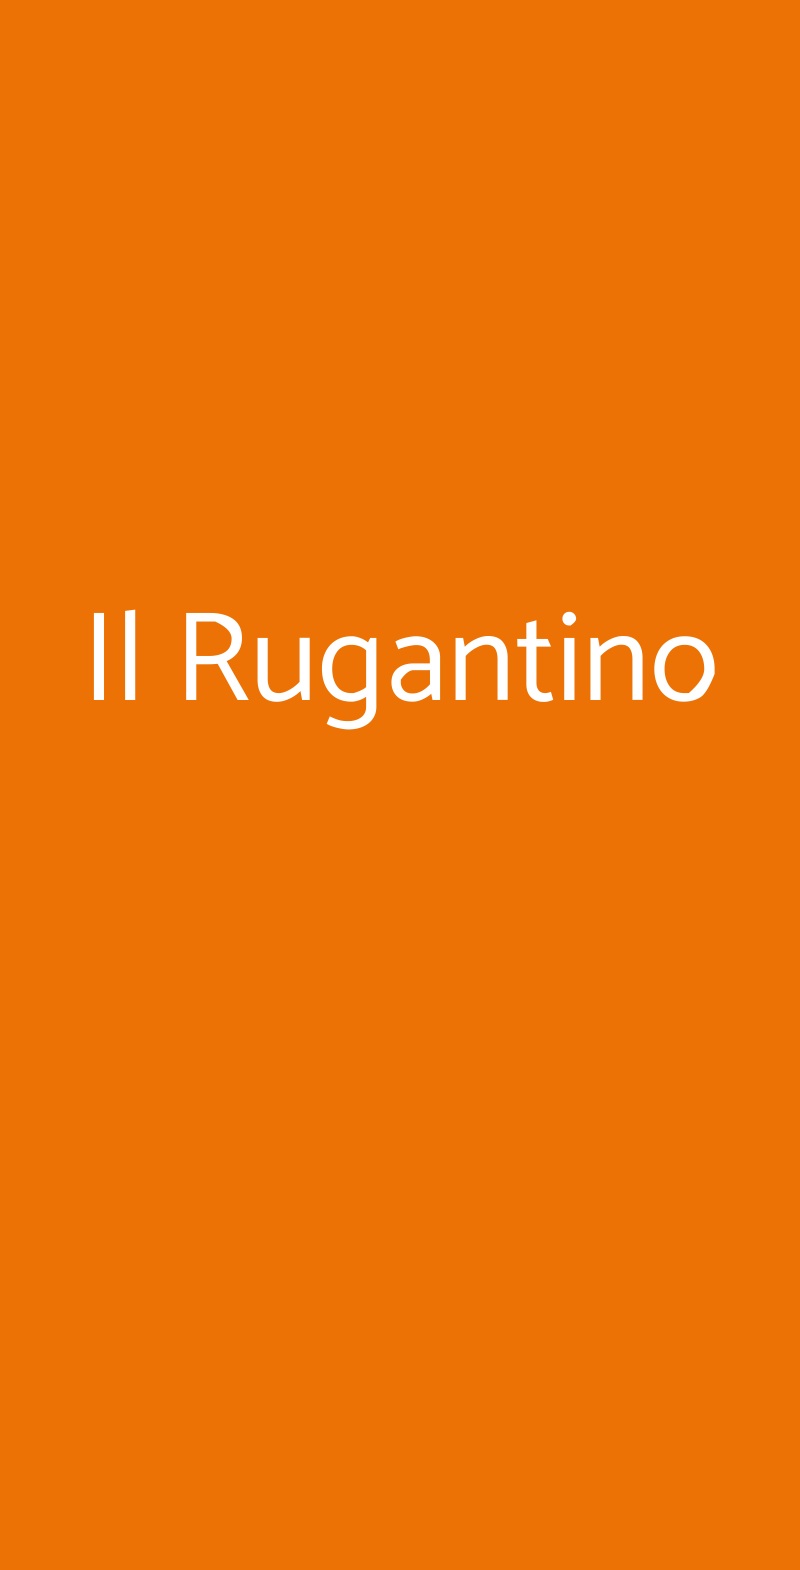 Il Rugantino Caserta menù 1 pagina